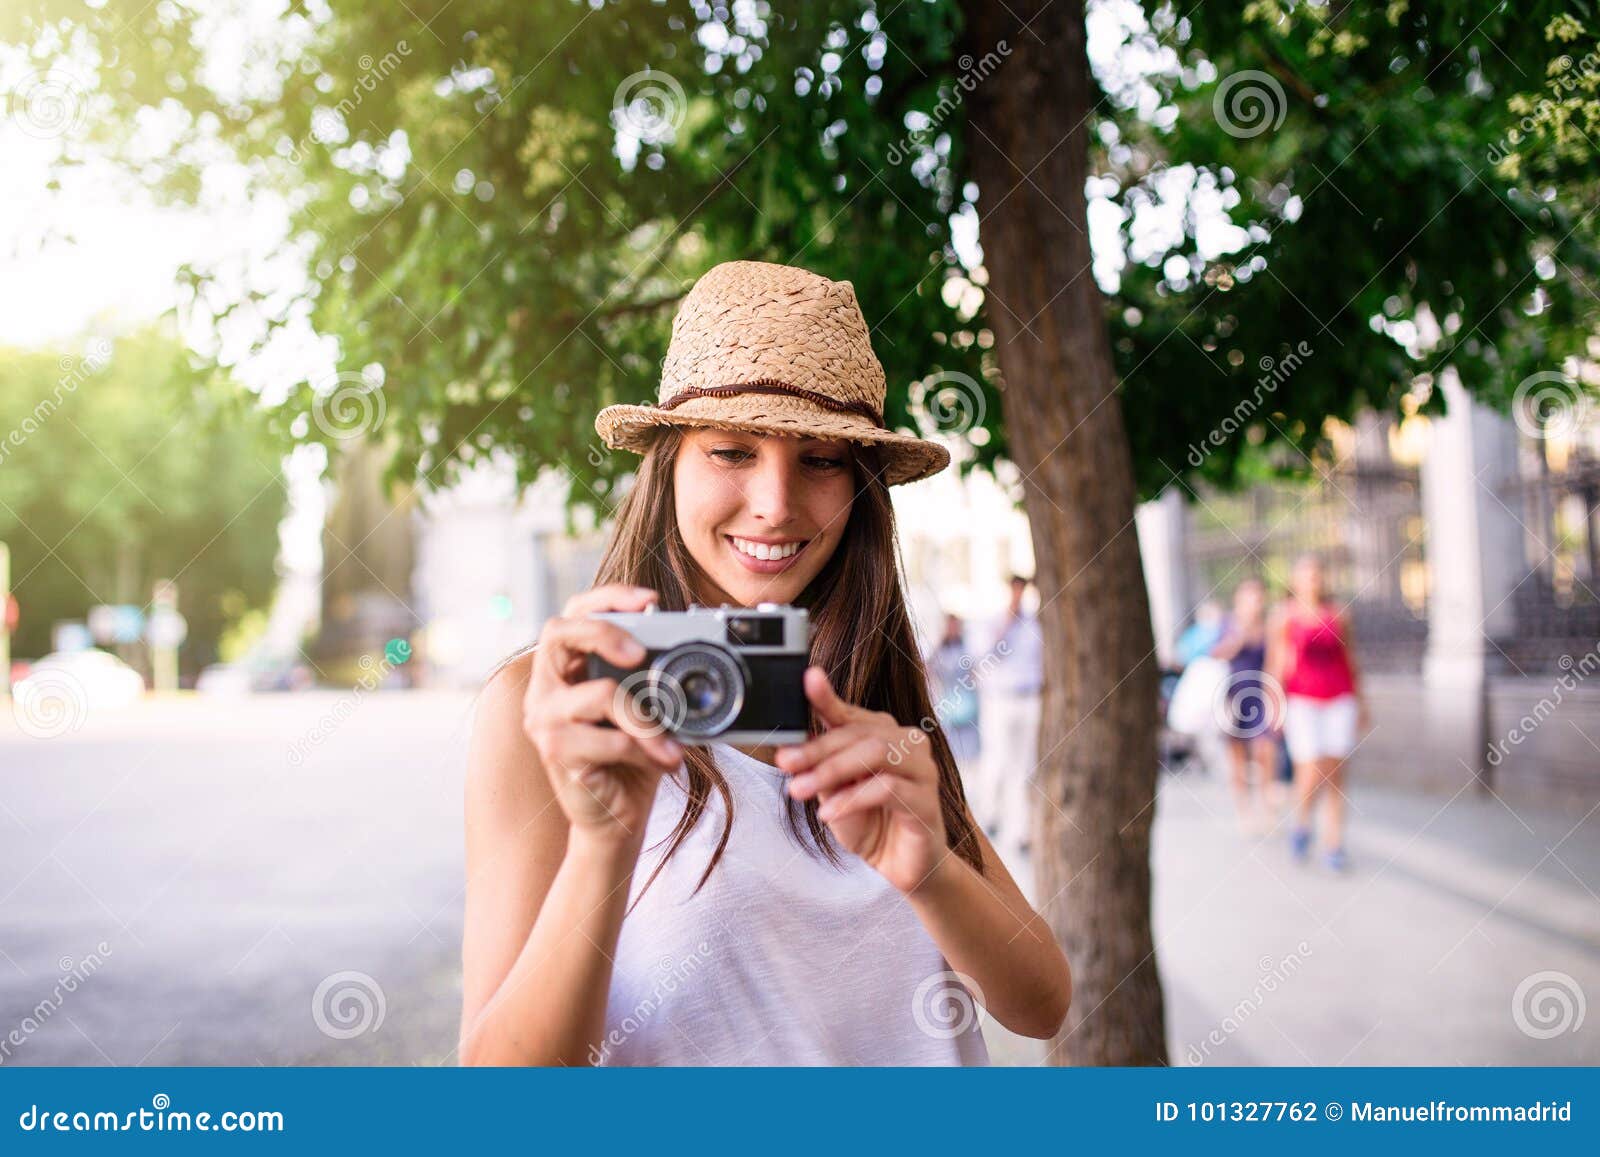 Young Beautiful Tourist Woman Using a Photo Camera Stock Photo - Image ...